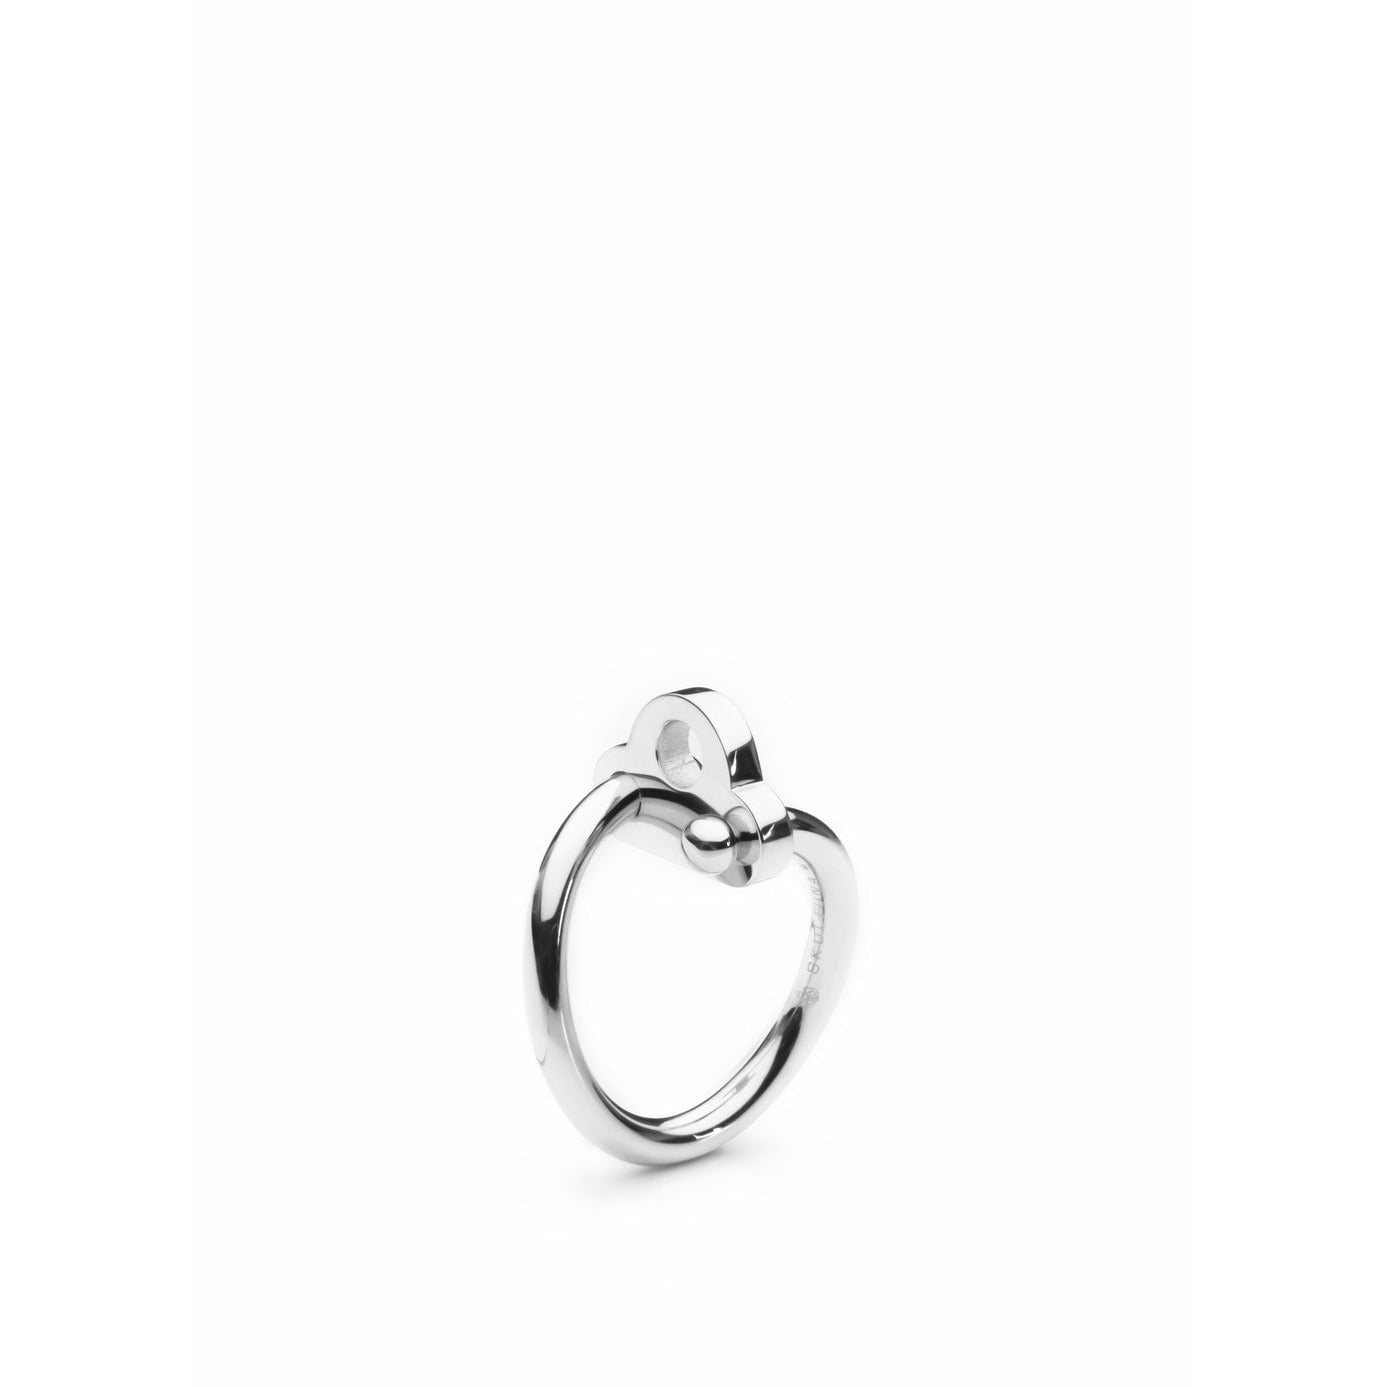 Skultuna Key Ring Mała polerowana stal, Ø1,6 cm